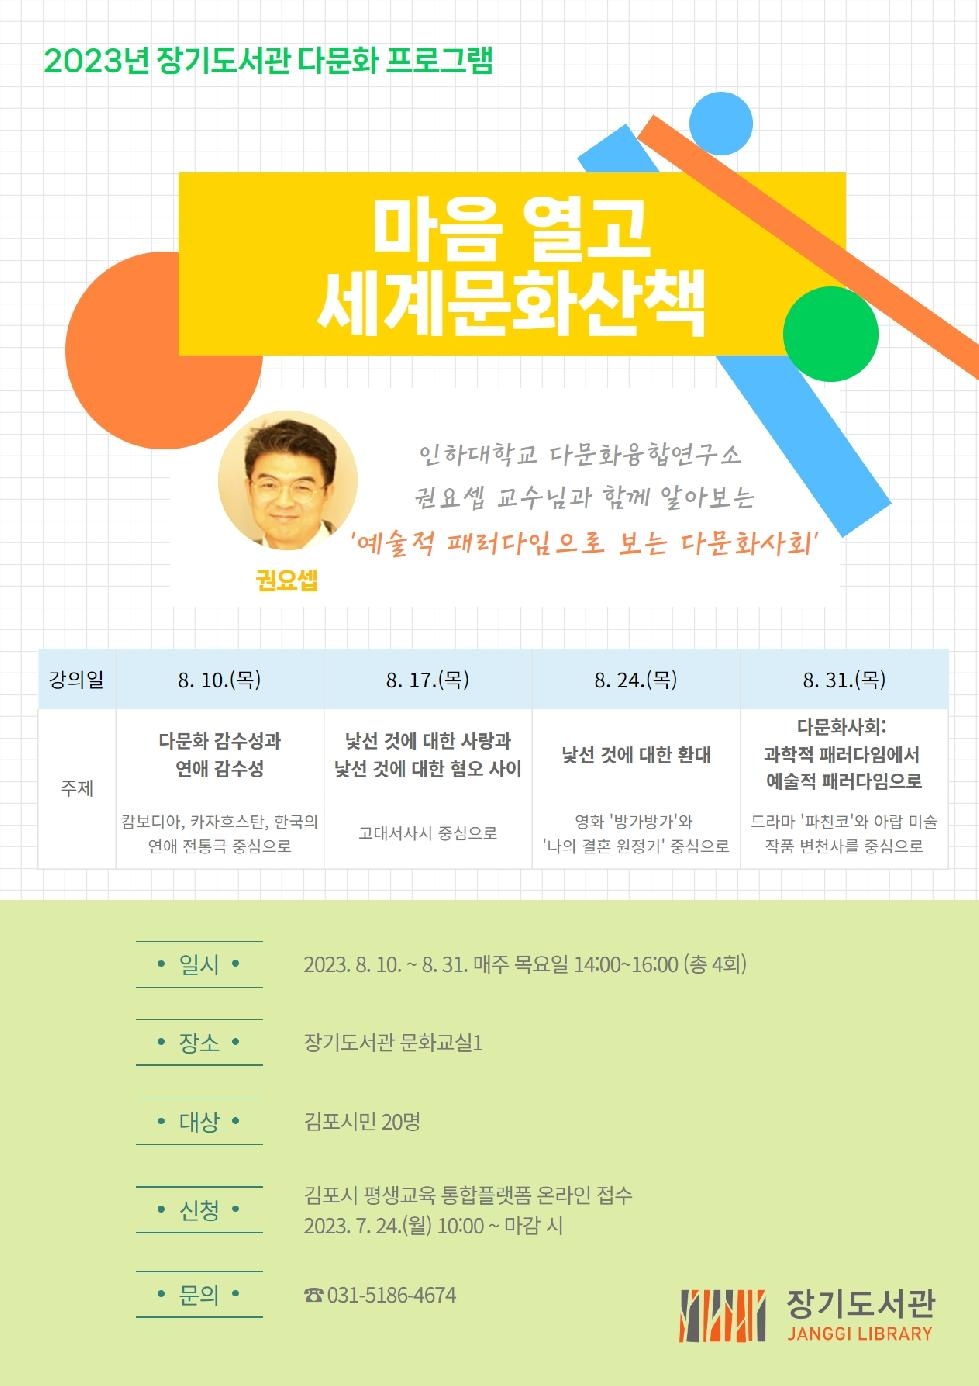 김포시 장기도서관 다문화 프로그램 ‘마음 열고 세계문화산책’